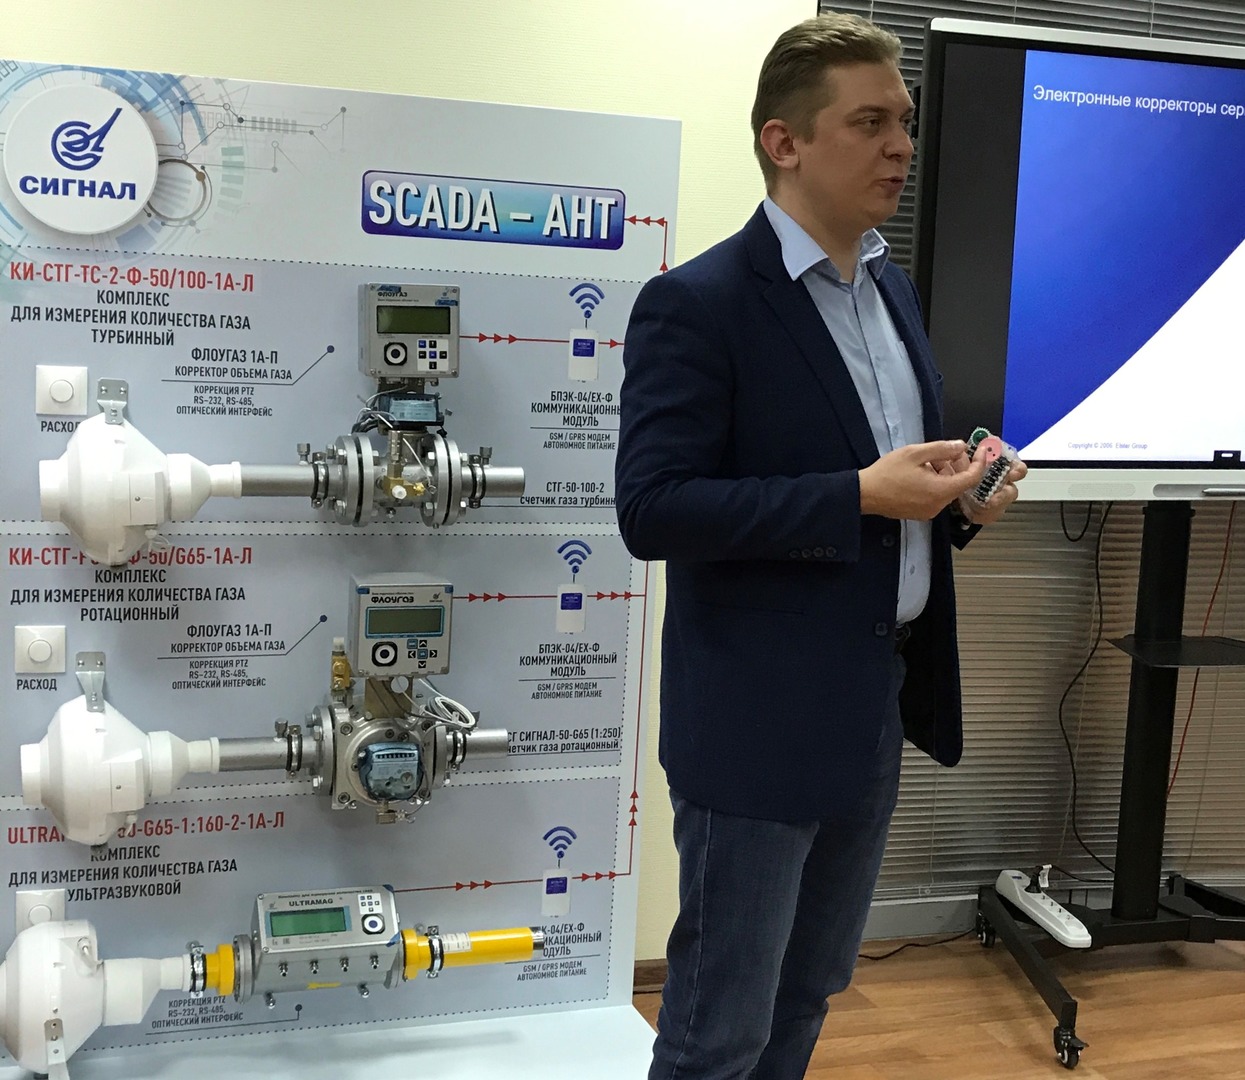 Учебно-методический центр "Газпром межрегионгаз метрология" проводит обучение метрологов региональных компаний